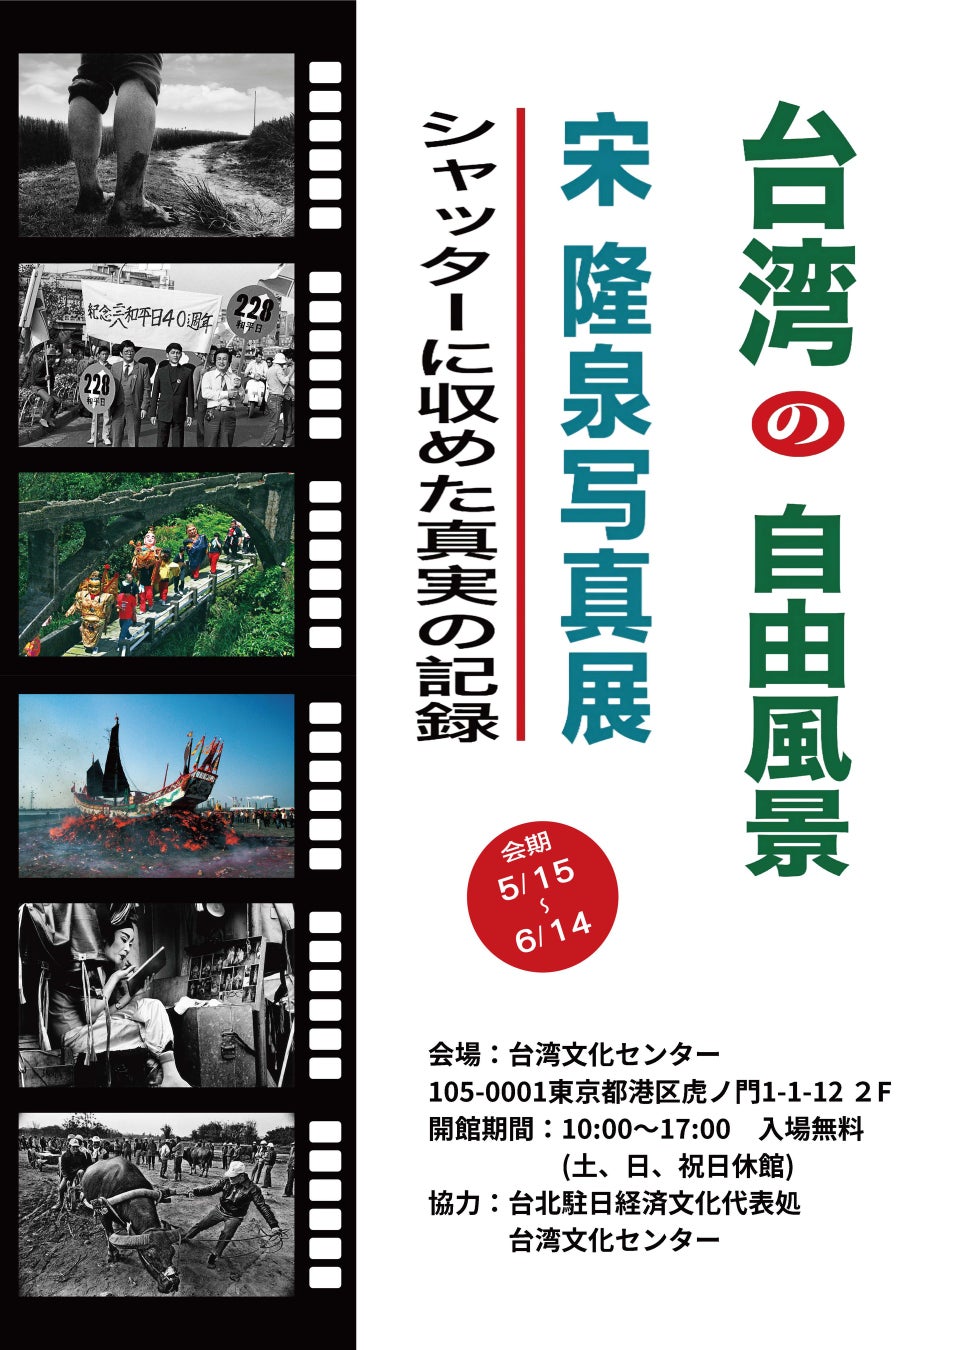 宋隆泉氏「台湾の自由風景-シャッターに収めた真実の記録」：台湾の過去と現在、民主化の変革